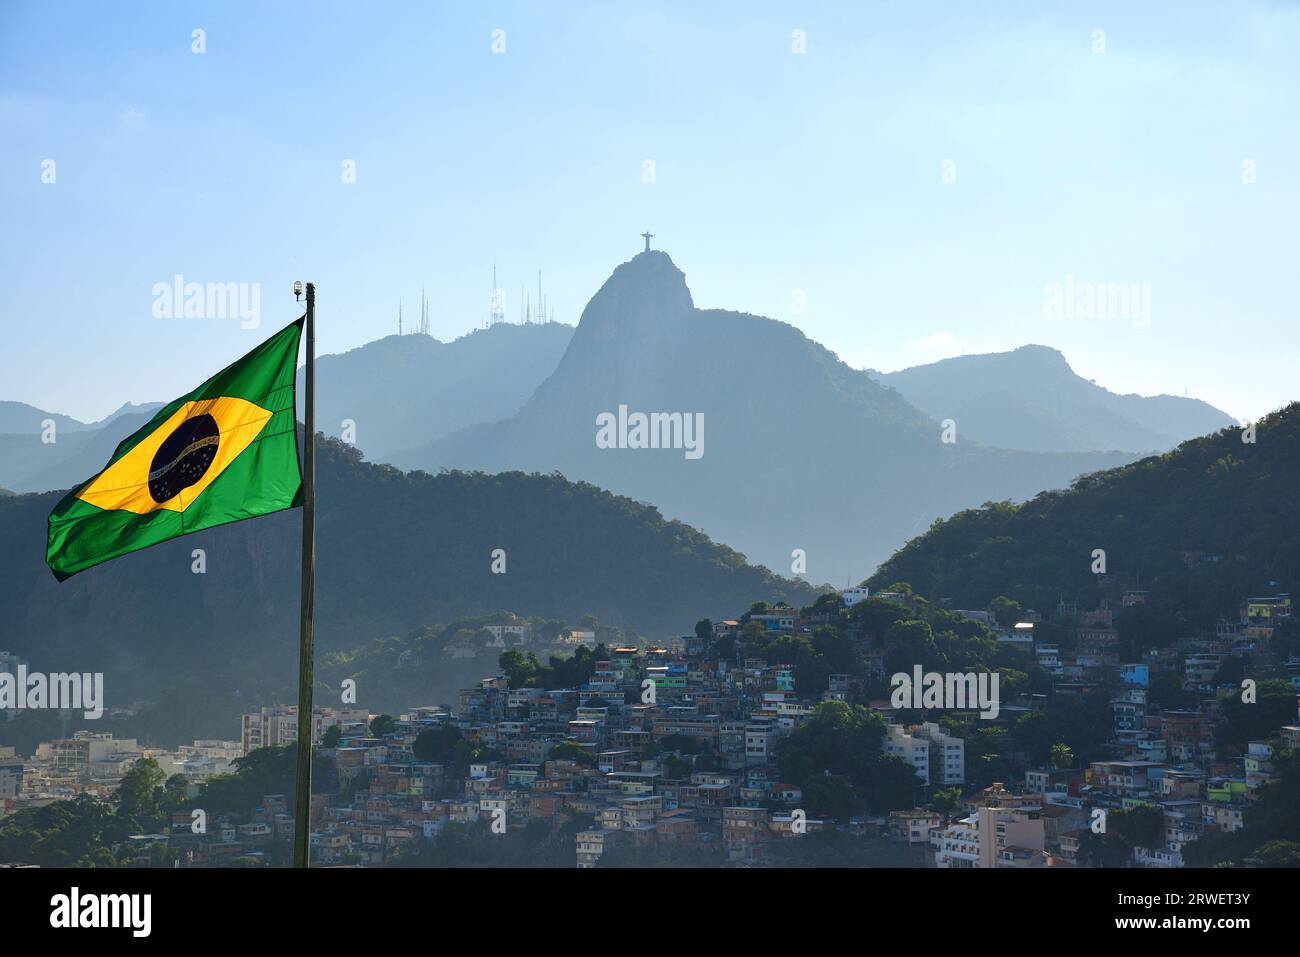 Le drapeau brésilien, la montagne du Corcovado et la Favela à Morro da Babilônia, vu de forte Duque de Caxias (forte do Leme) - Rio de Janeiro Banque D'Images